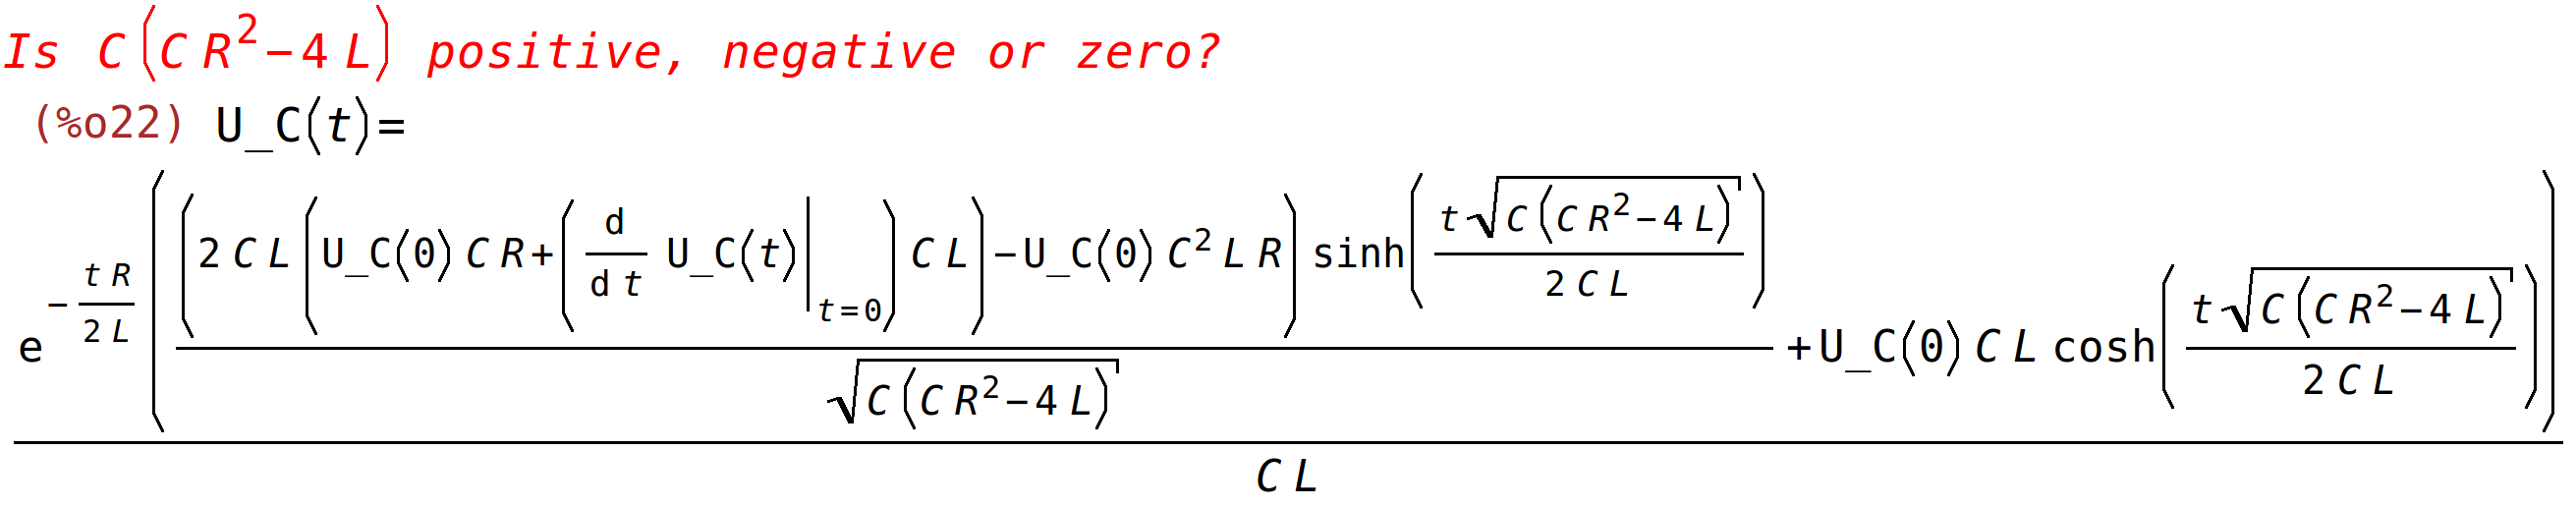 (^)p;<BR>
()(^(()/())((((()(at('diff((),t,1),)))()^)((sqrt((^)))/()))/sqrt((^))()((sqrt((^)))/())))/()